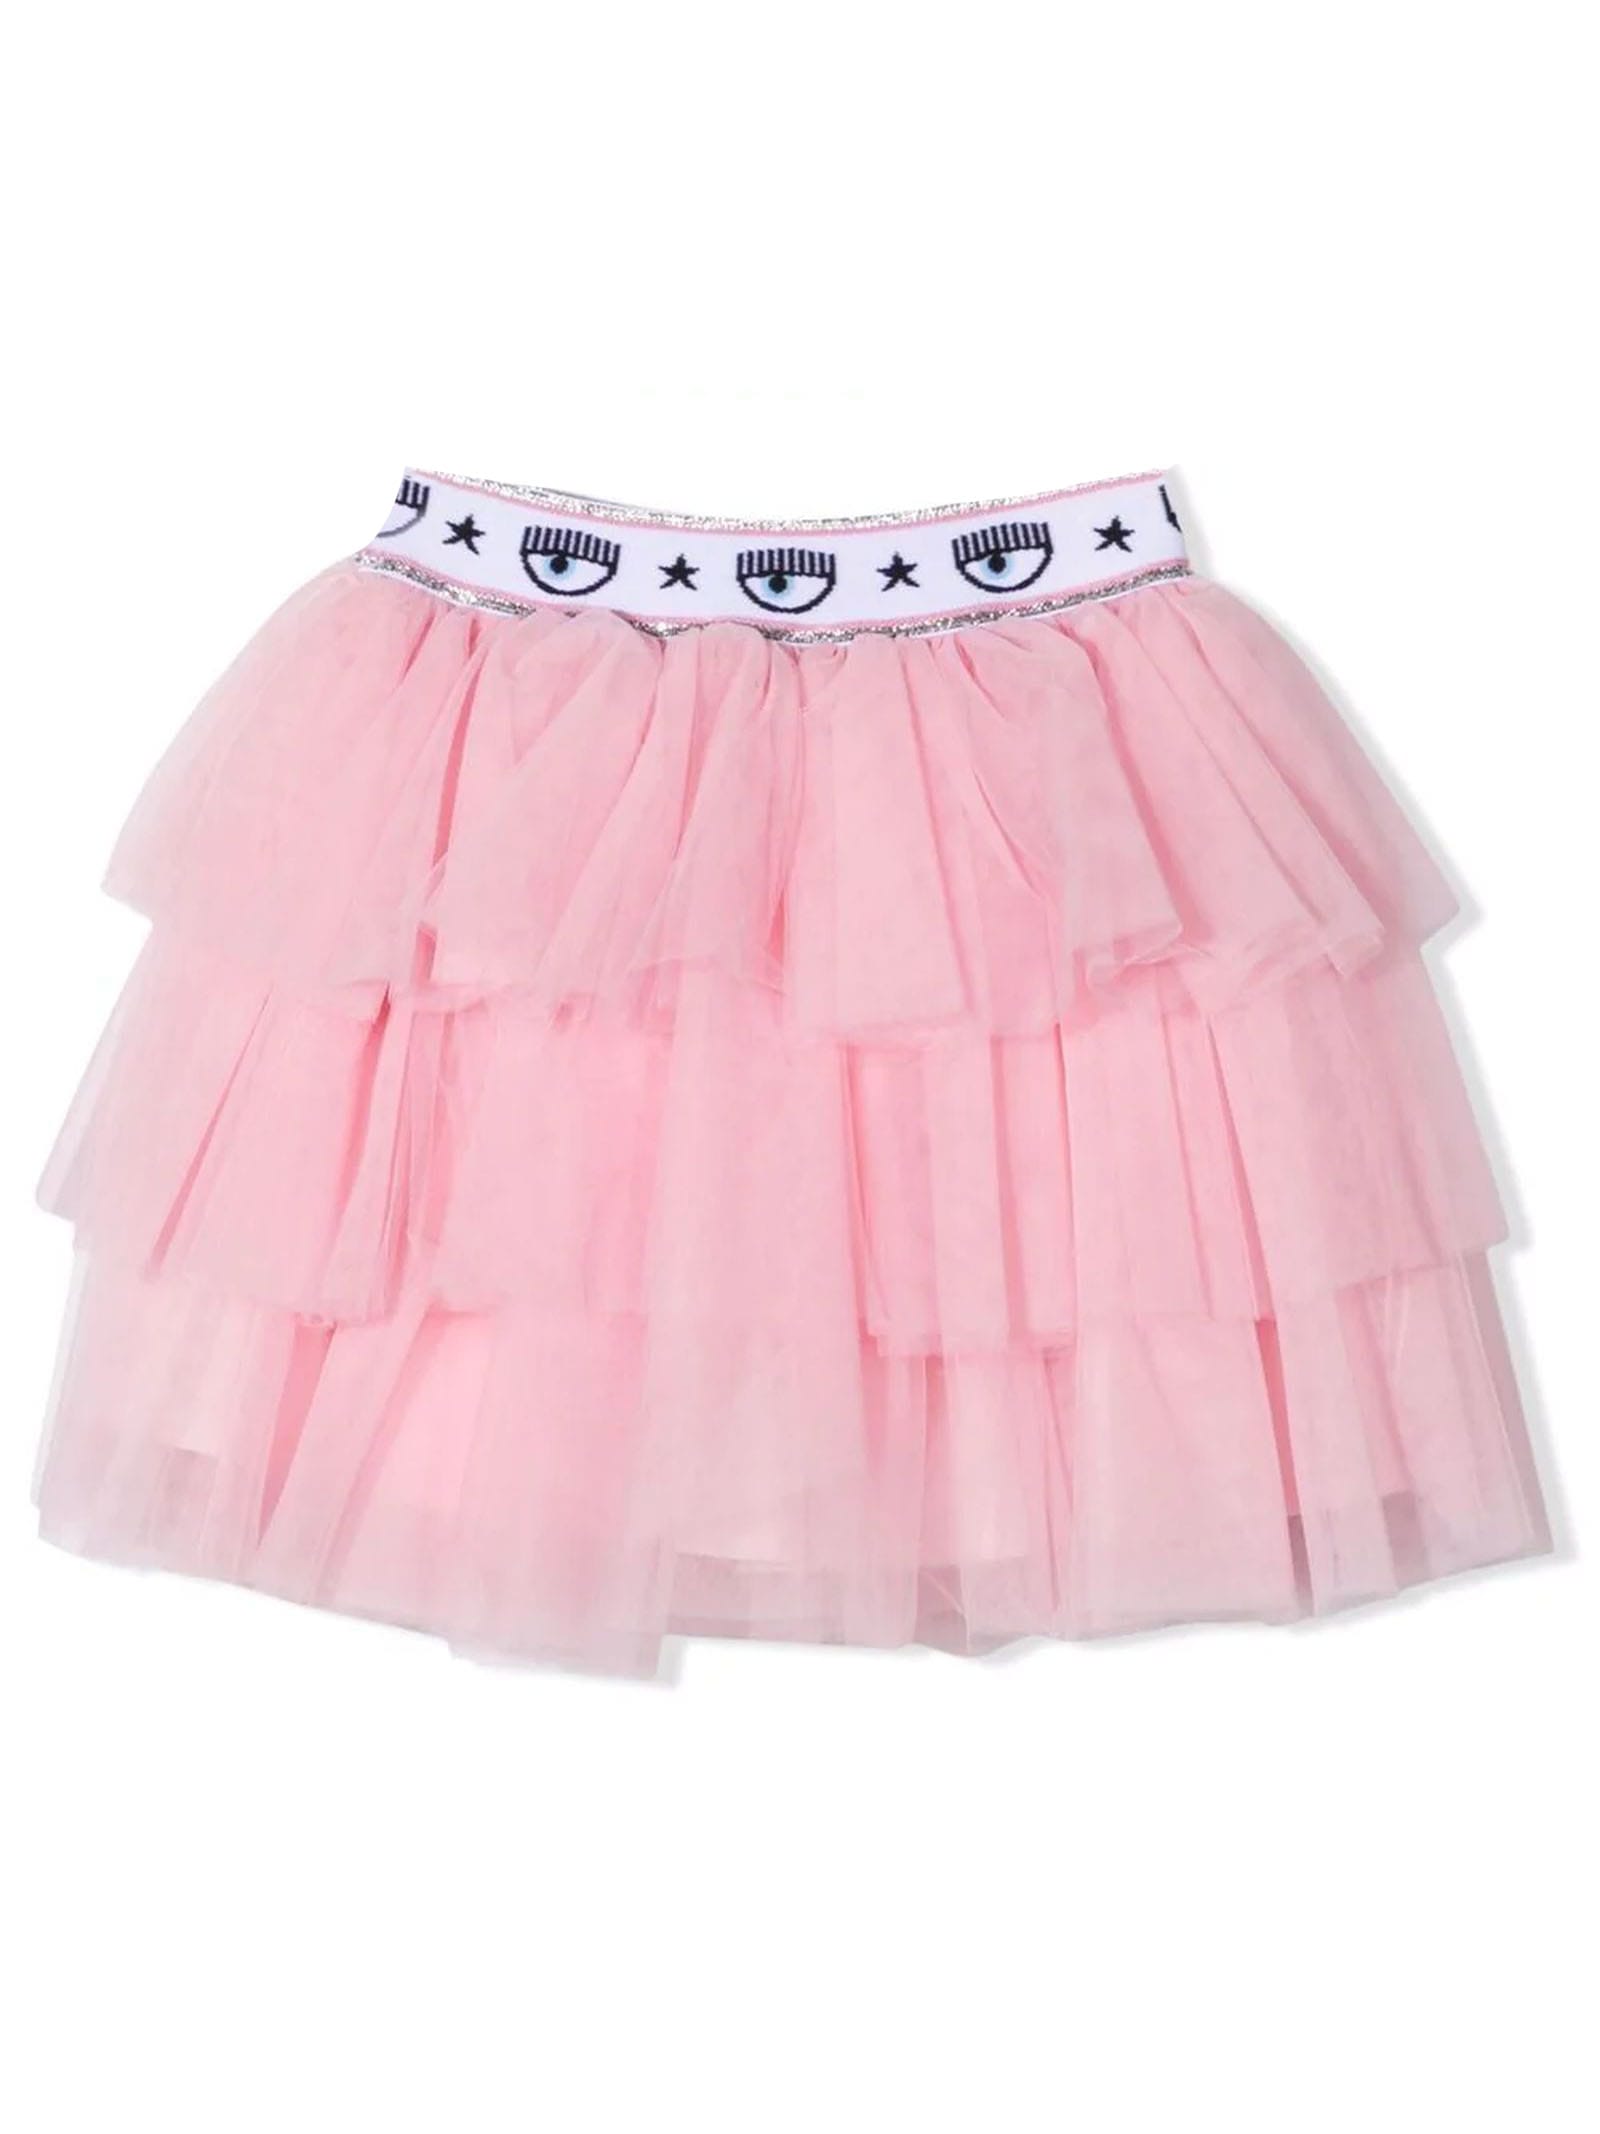 Chiara Ferragni Light Pink Tiered Skirt